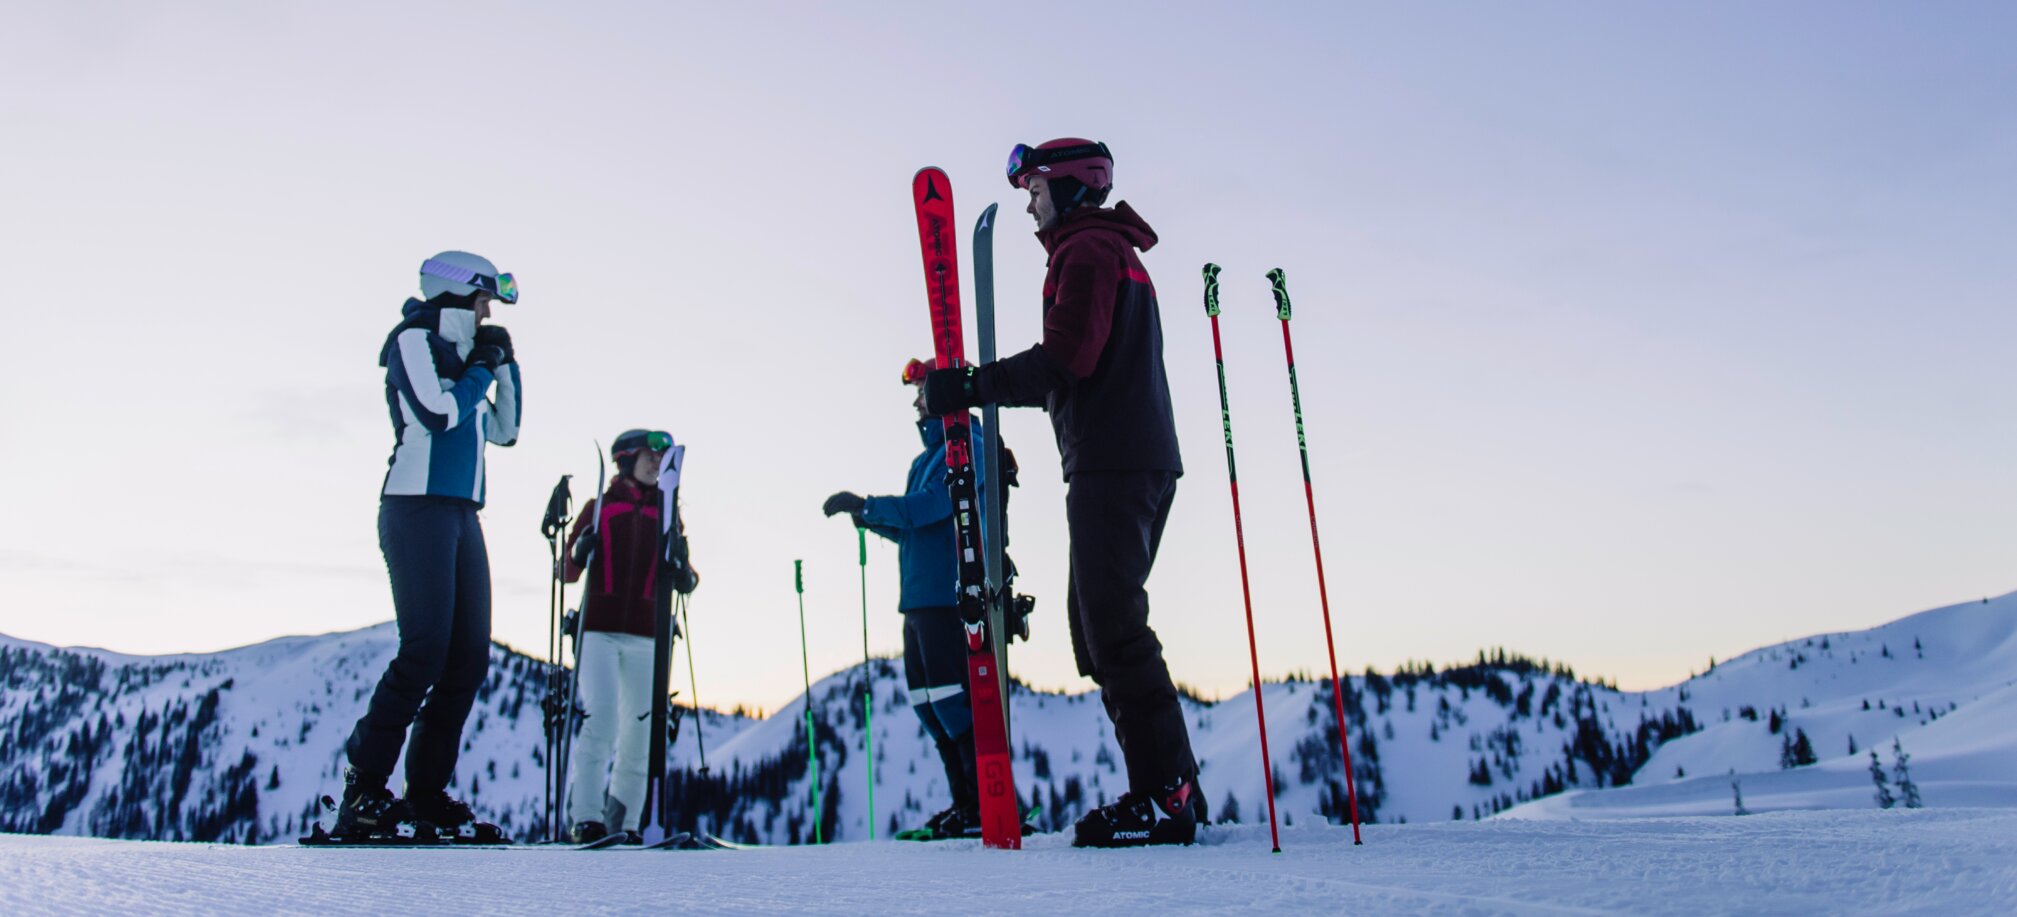 Bestes Skivergnügen in wunderschöner alpiner Landschaft in Ski amadé